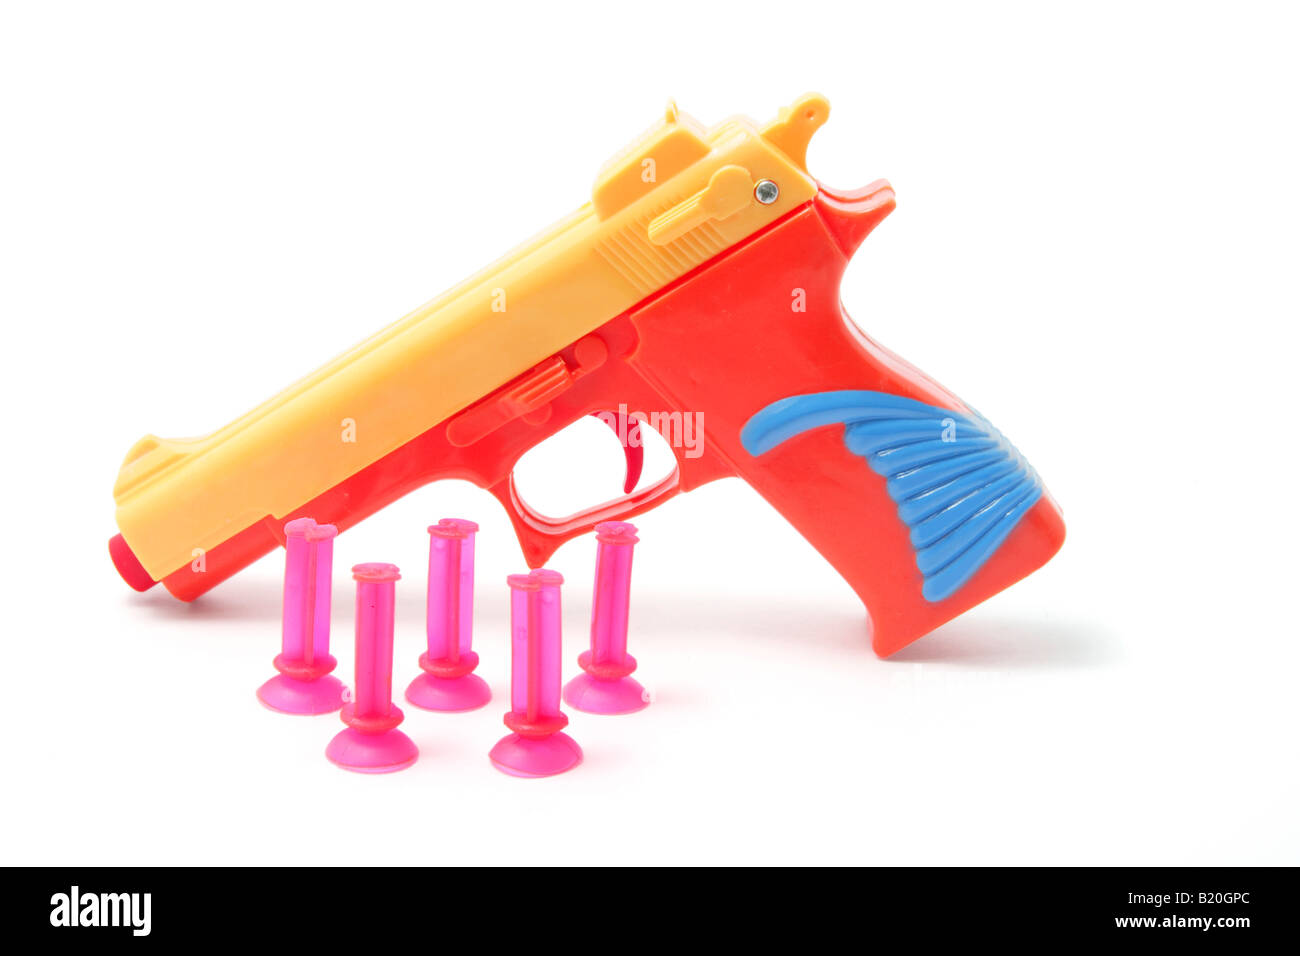 Pistola de juguete y balas de plástico Fotografía de stock - Alamy